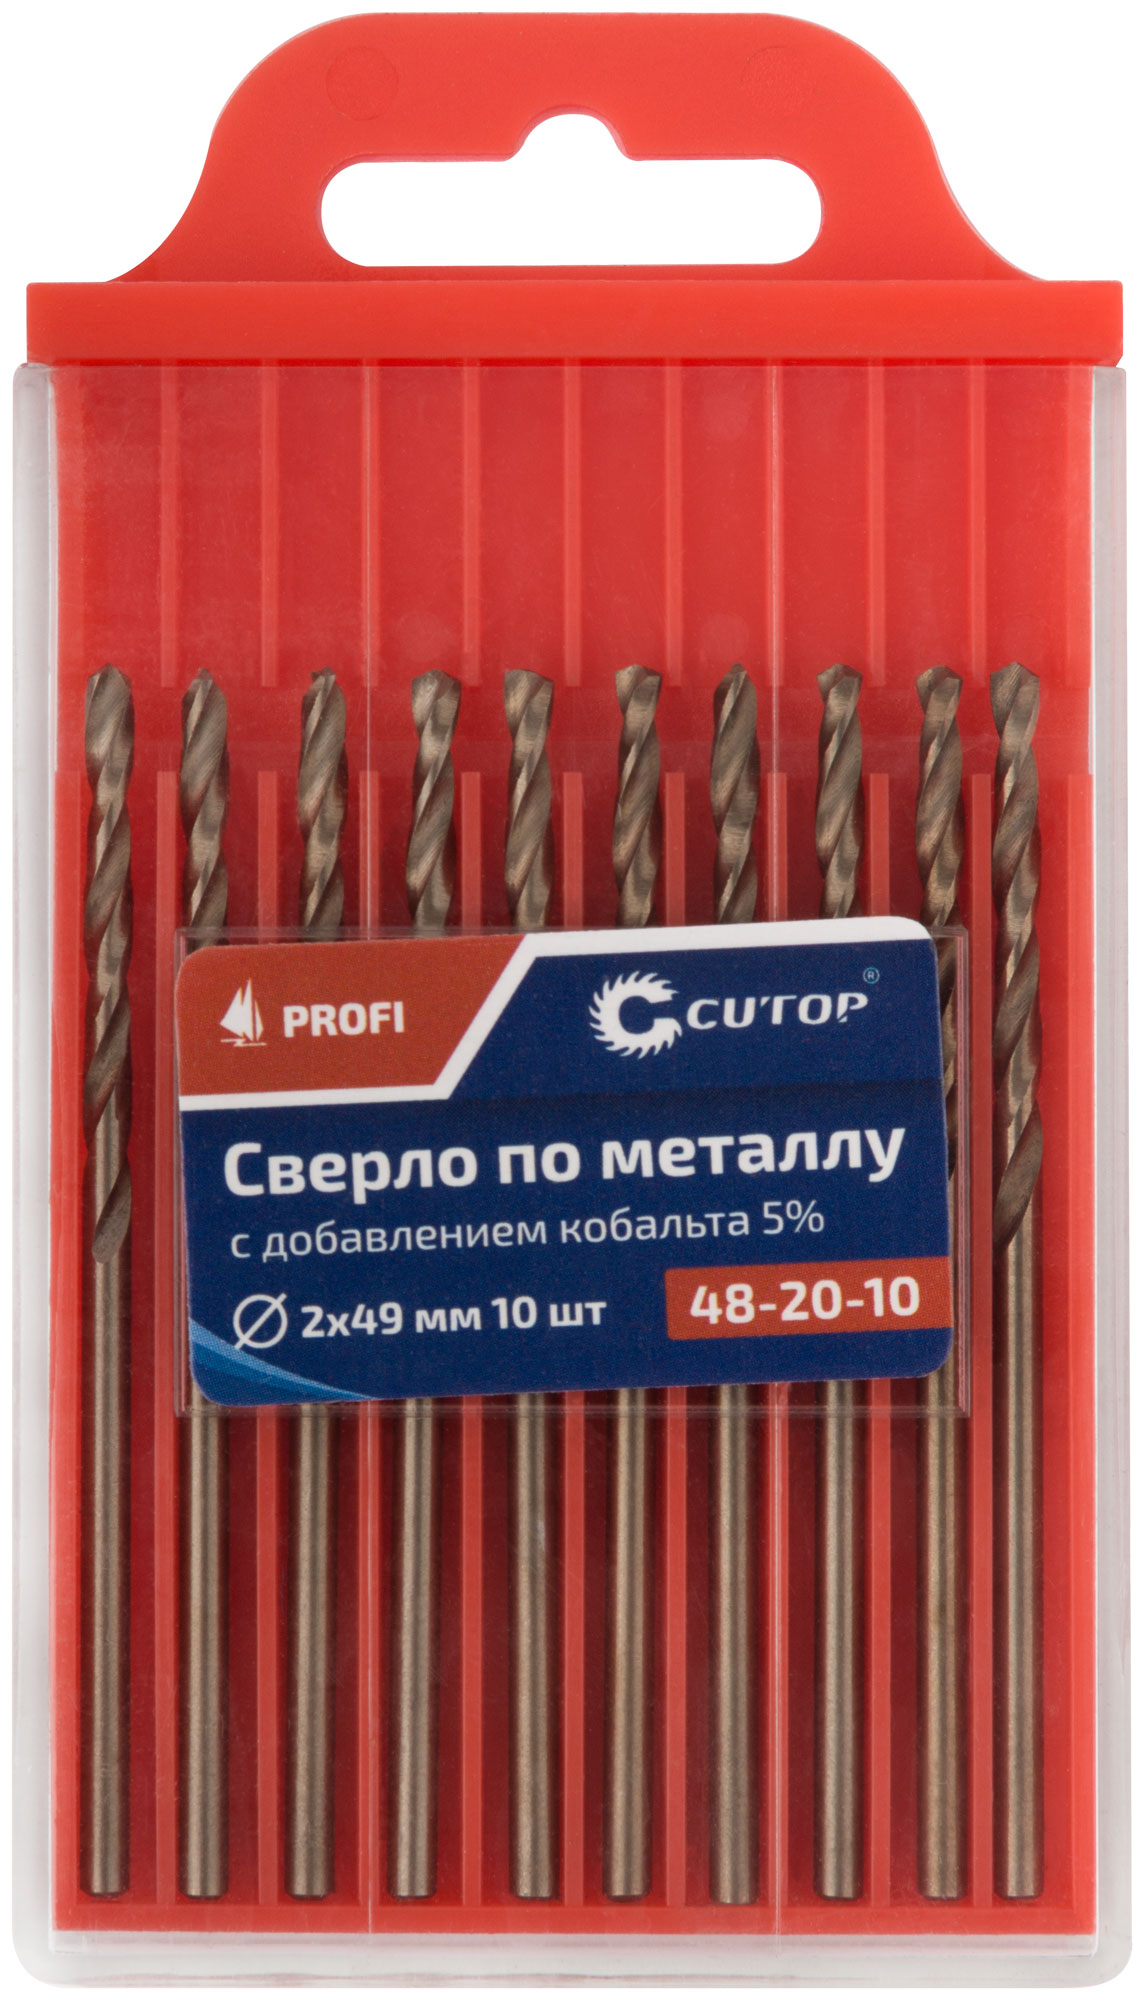 Сверло по металлу Cutop Profi с кобальтом 5%, 2 x 49 мм (10 шт)